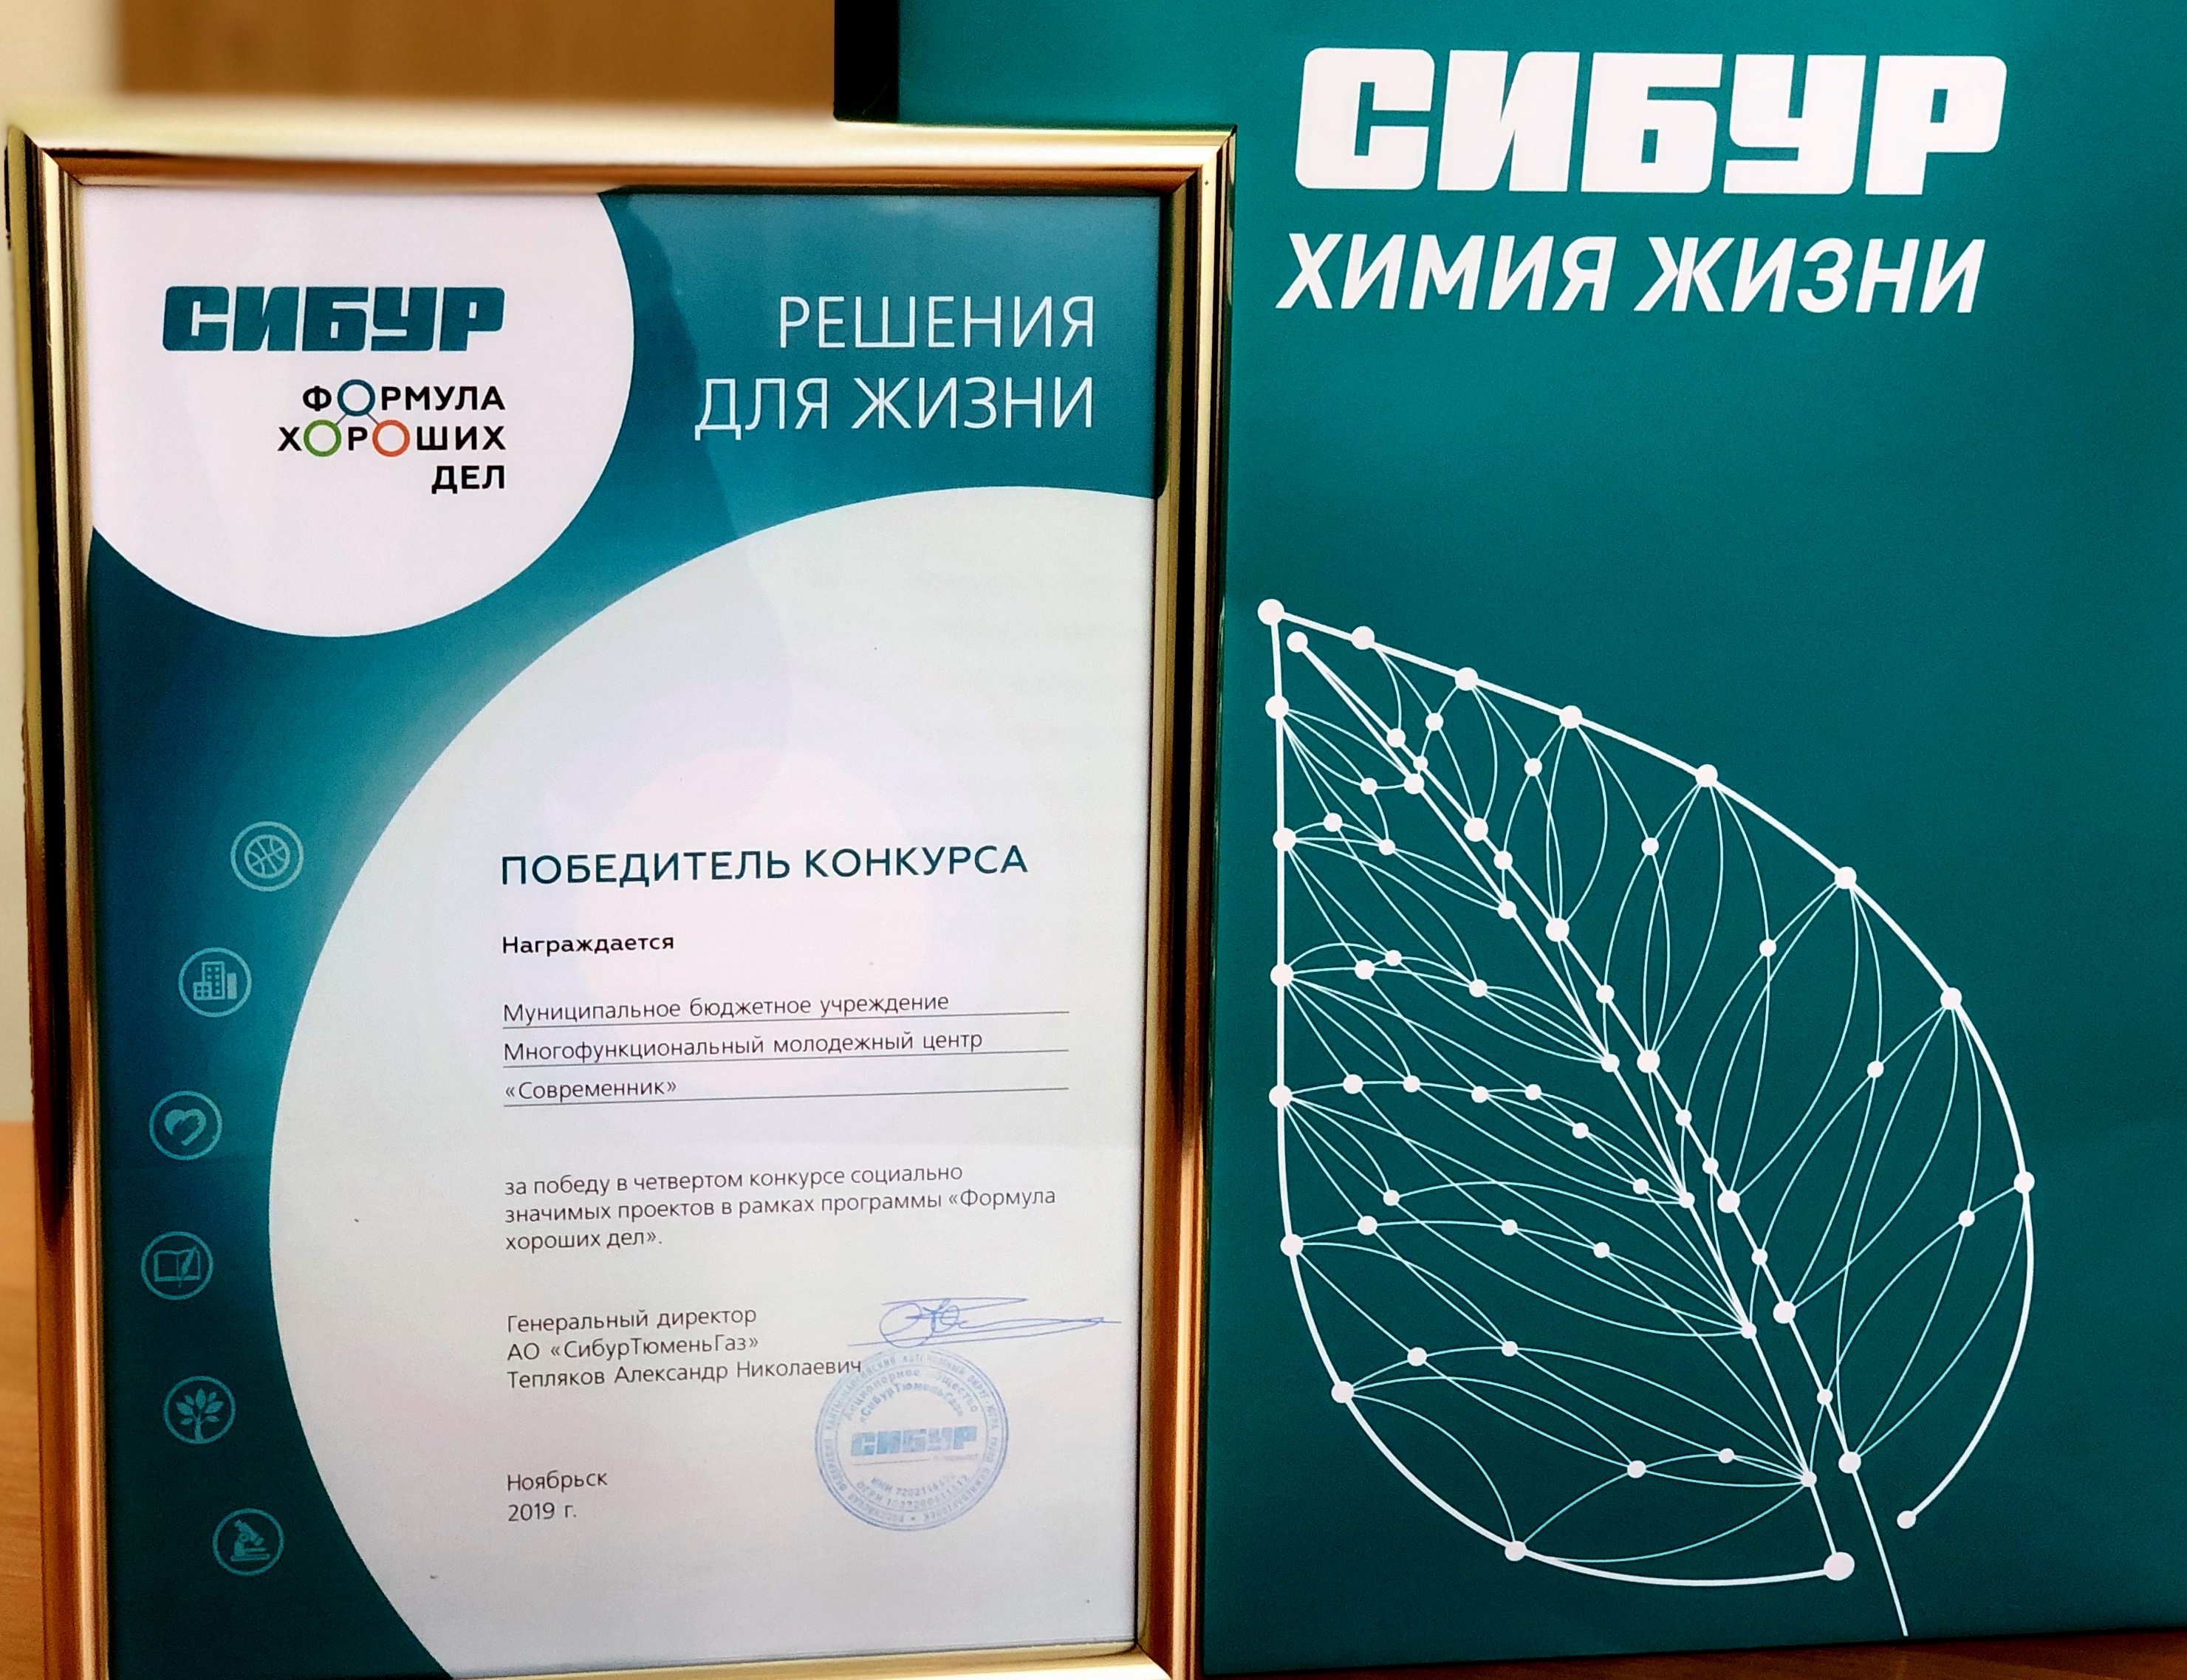 Очередная награда от ПАО  «СИБУР Холдинг» вручена центру «Современник»